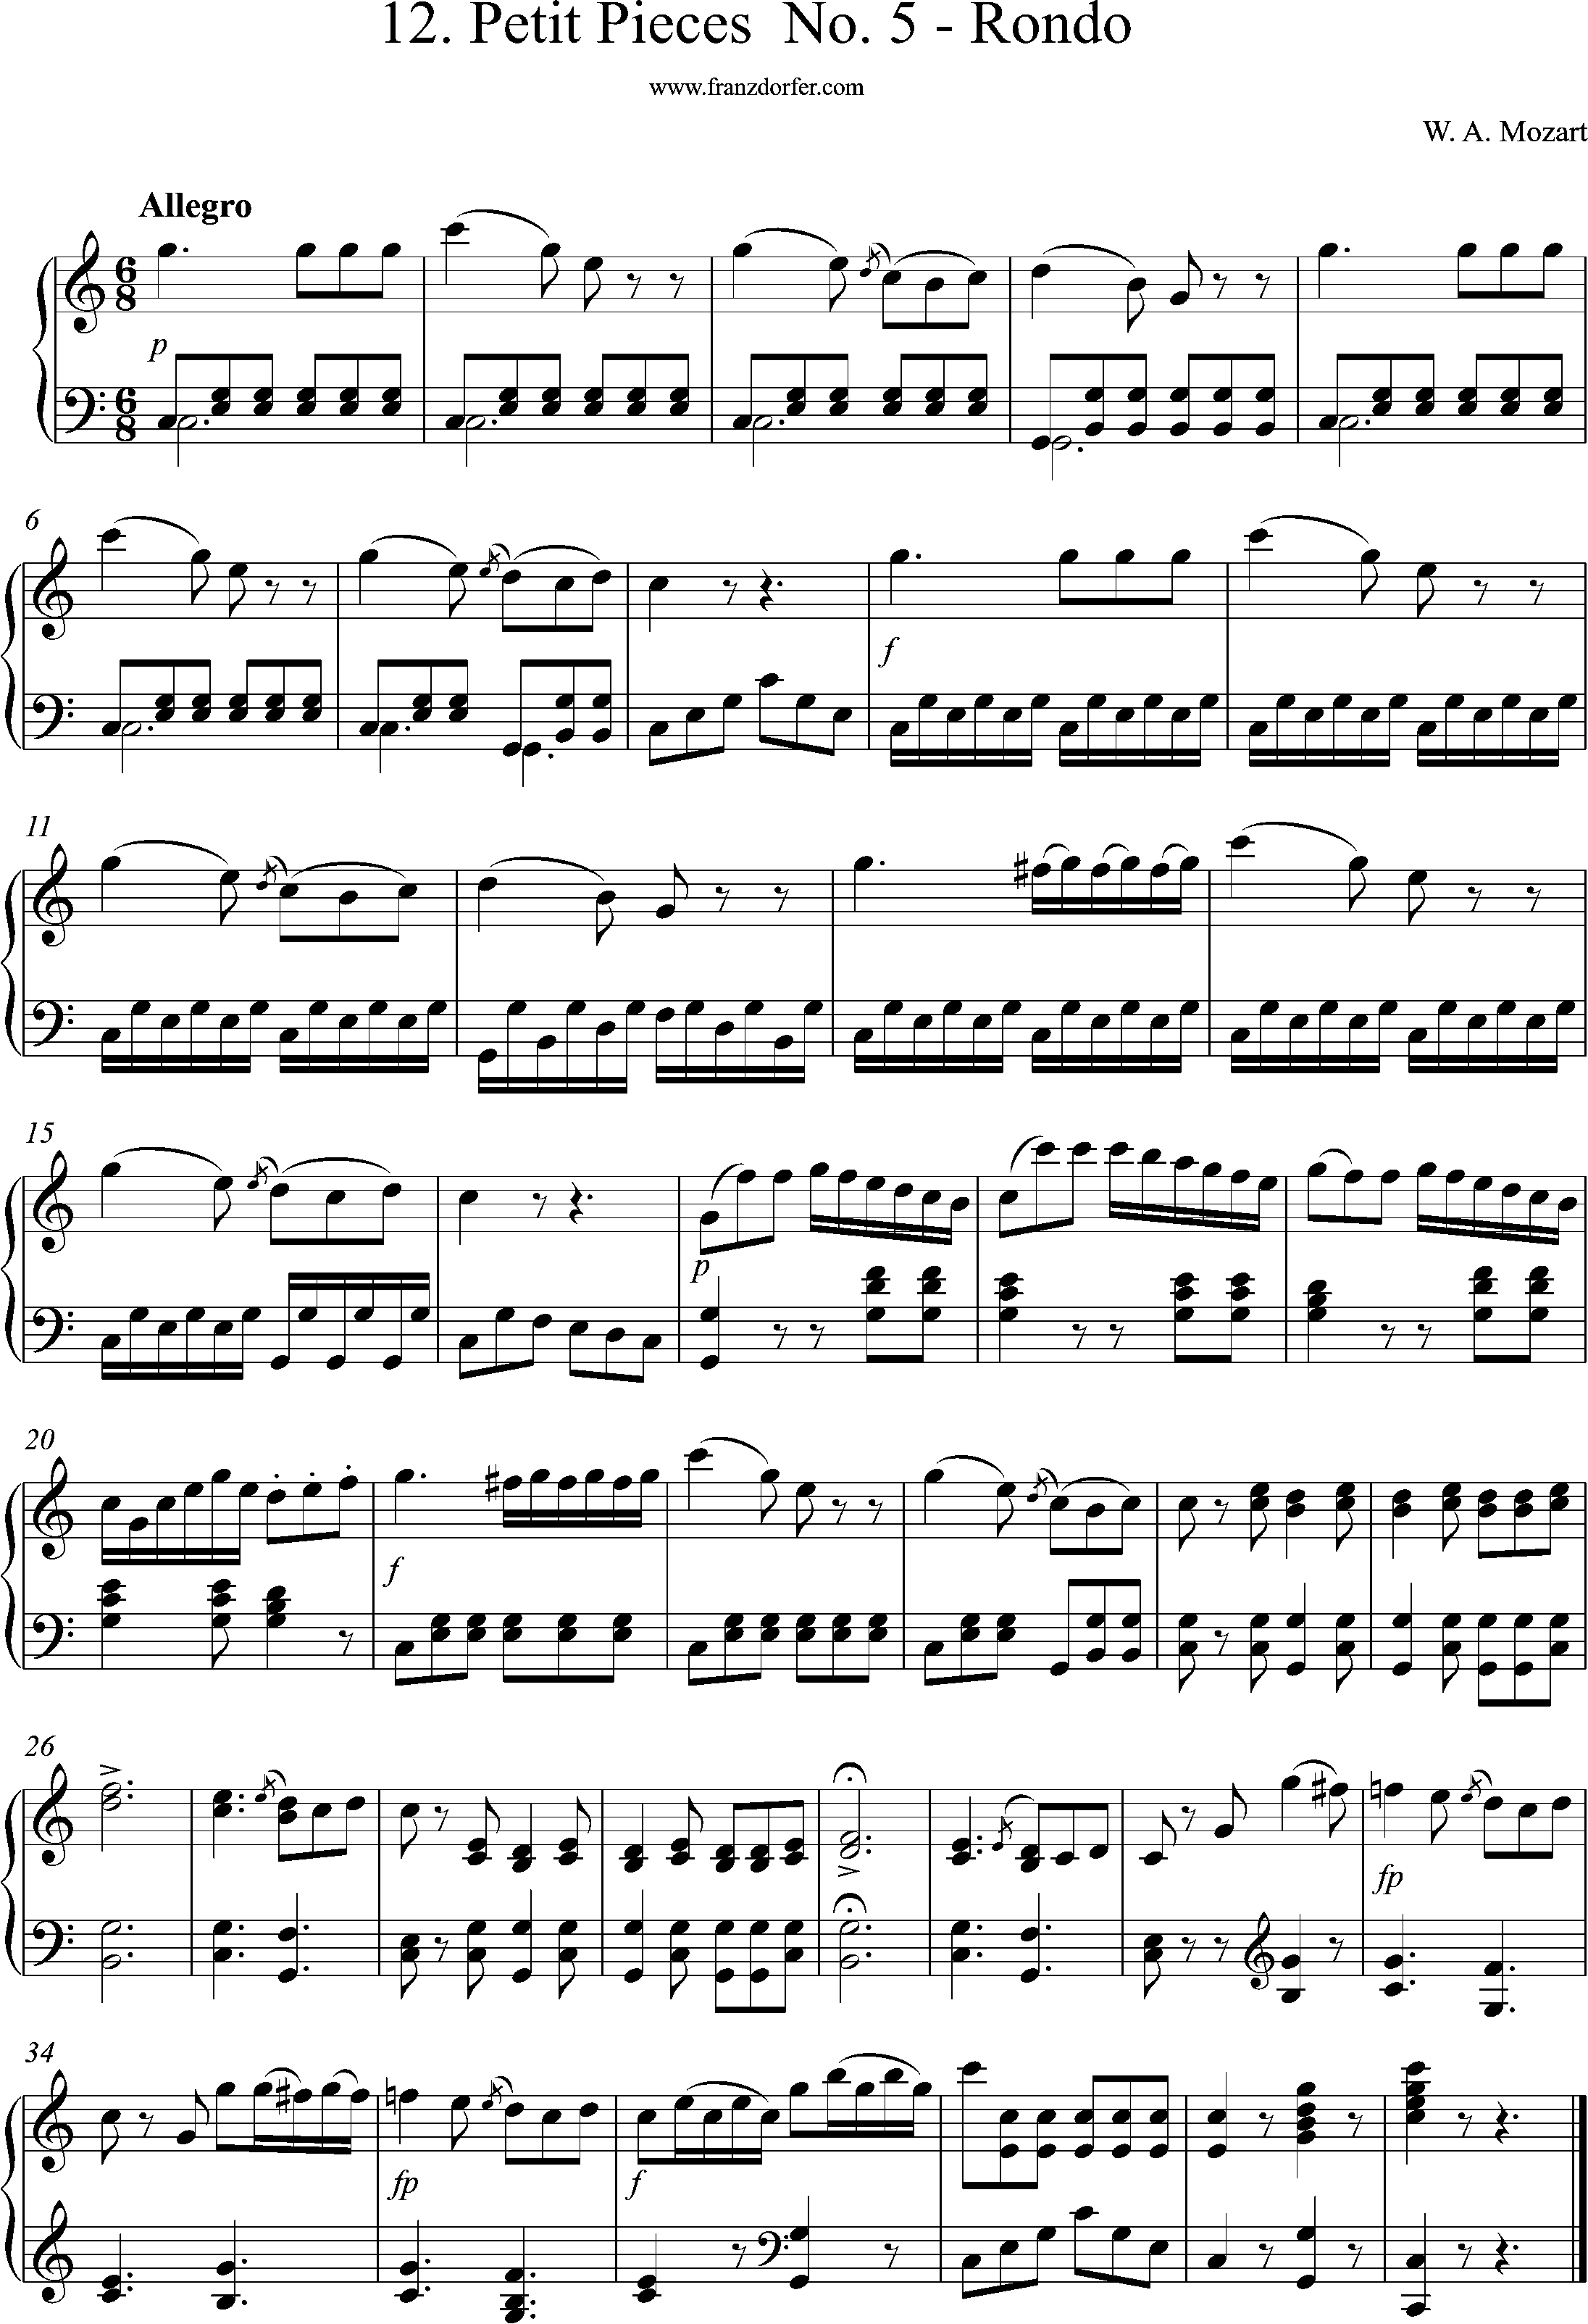 12 Pieces- C-Dur, Rondo, Mozart